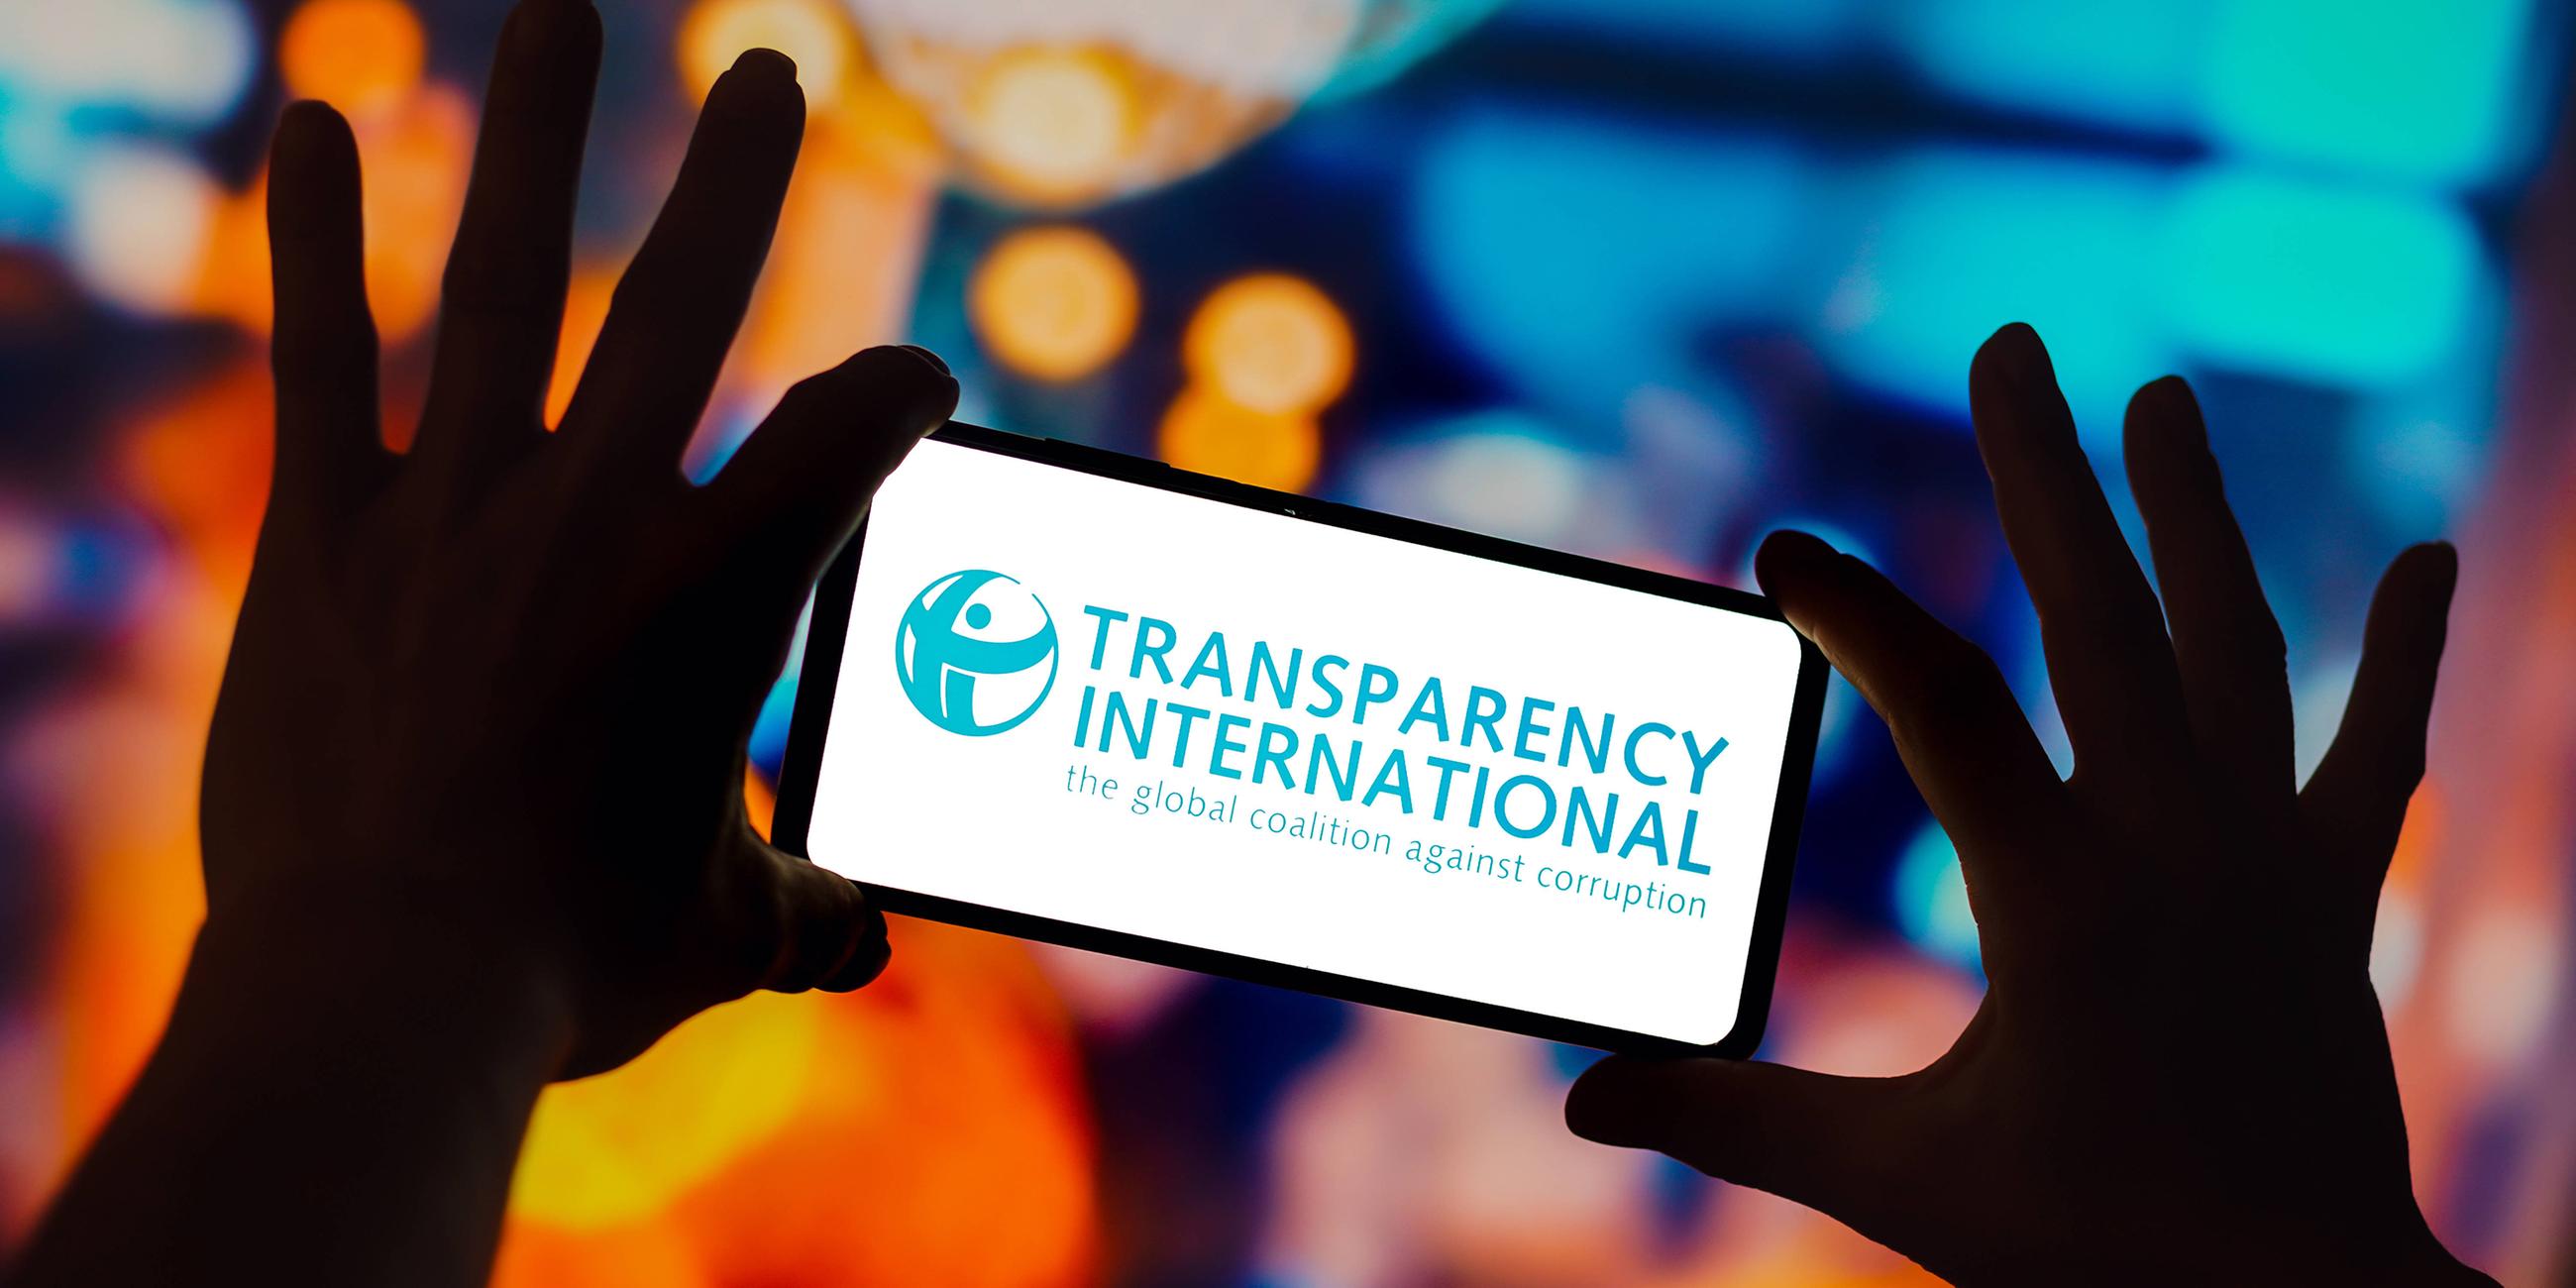 Das Logo von Transparency International auf einem Smartphone-Bildschirm